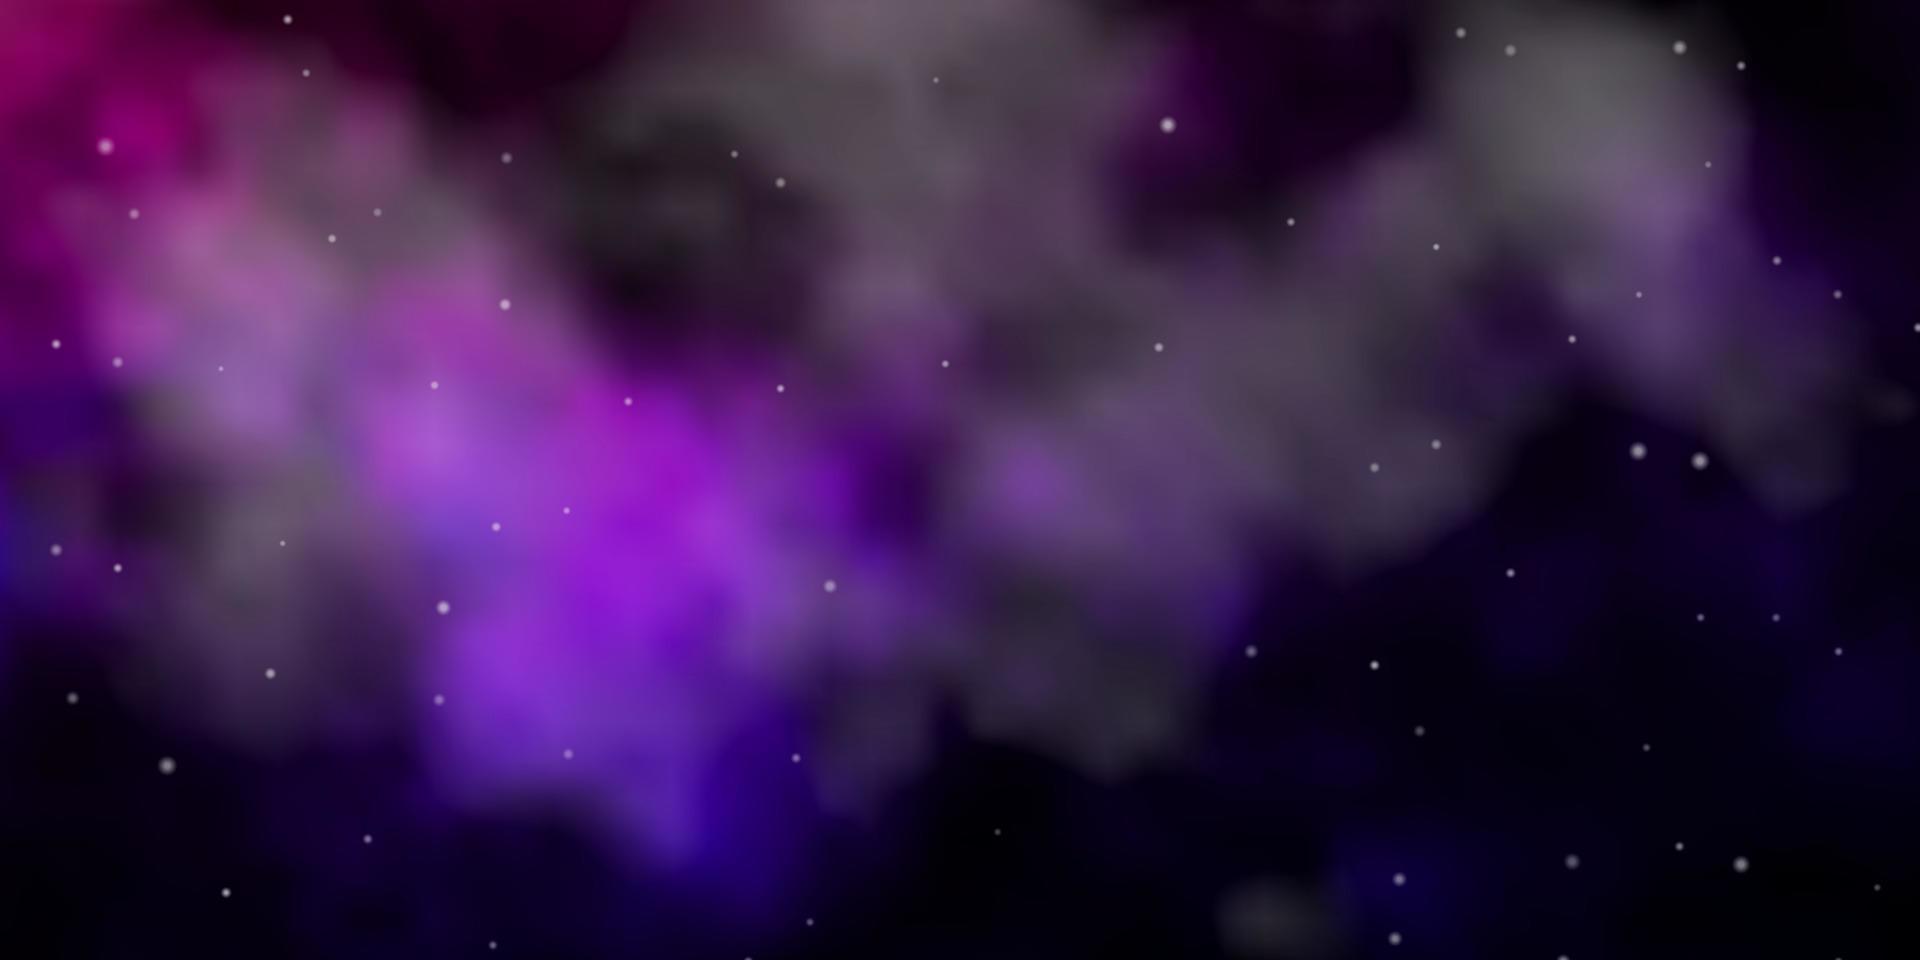 Fondo de vector púrpura, rosa oscuro con estrellas pequeñas y grandes.